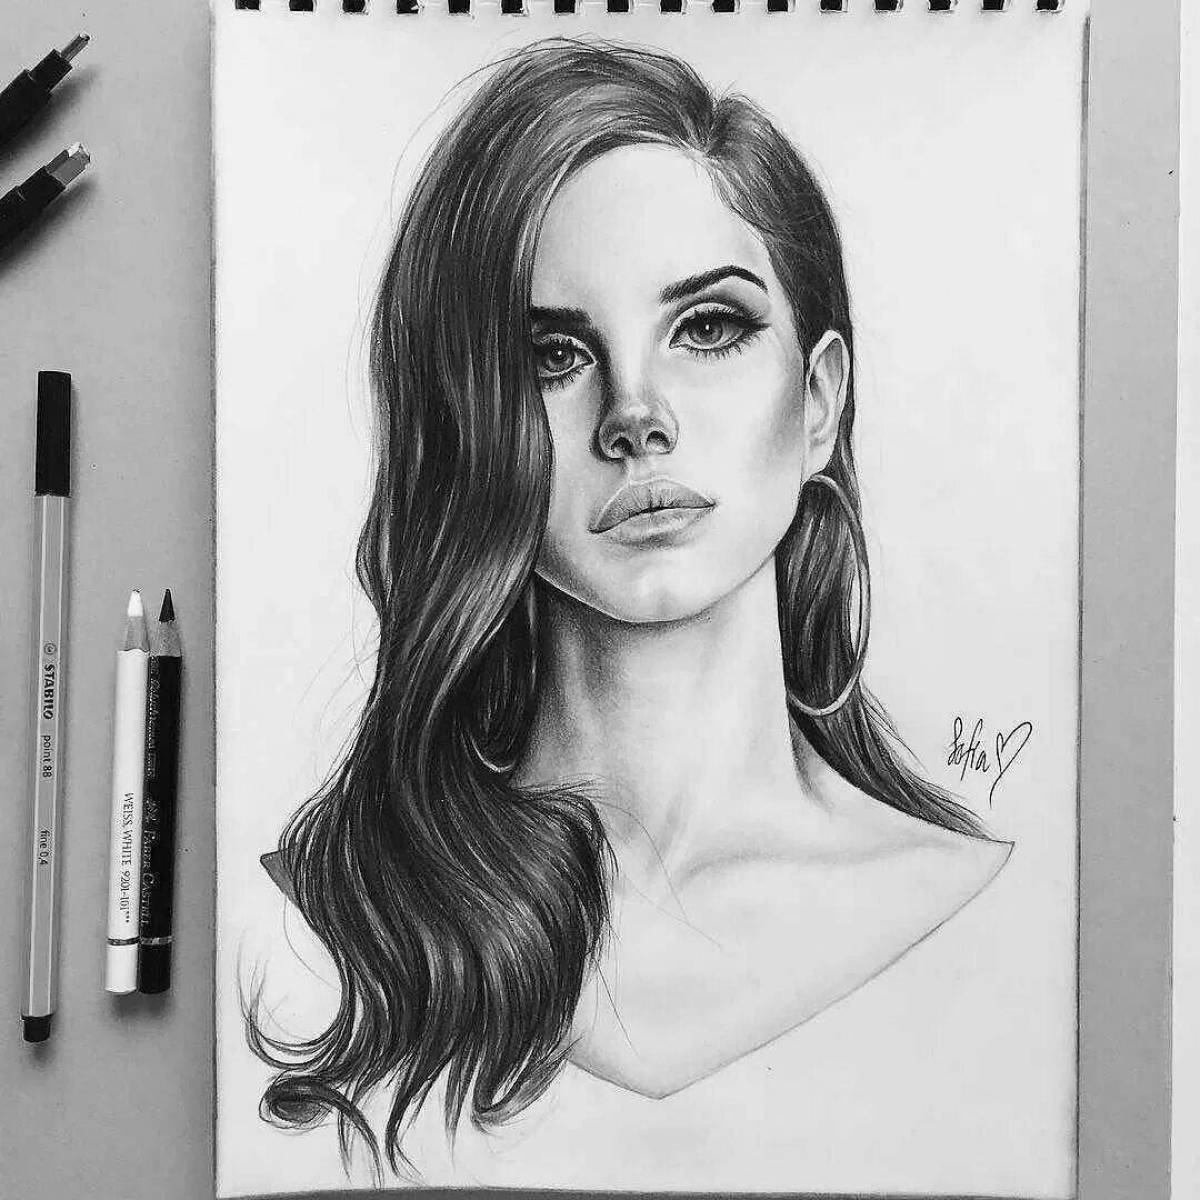 Lana Del Rey glowing coloring book